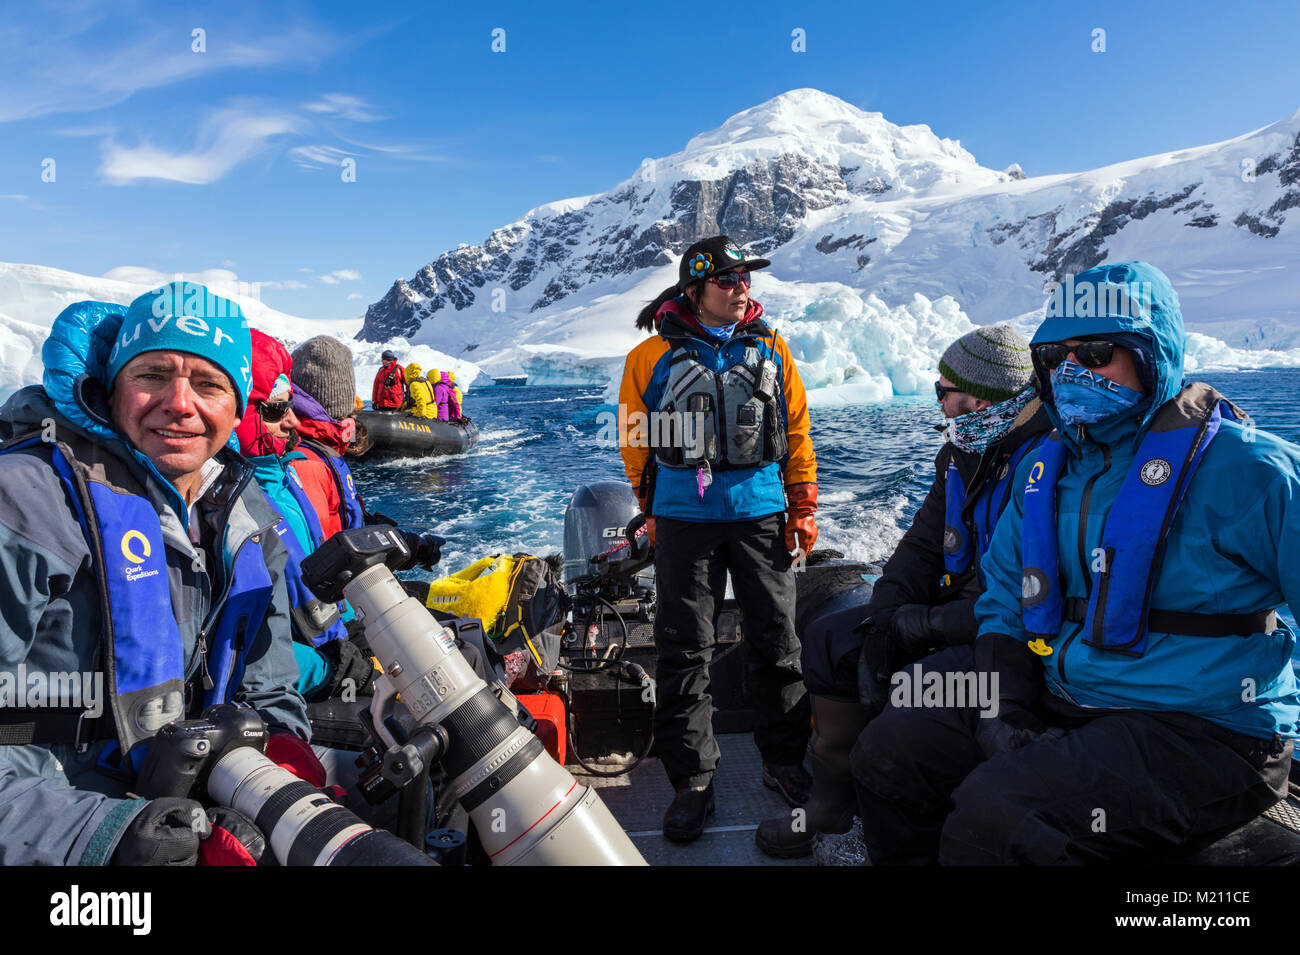 Les grands bateaux Zodiac gonflable alpinisme navette skieurs à l'Antarctique de l'océan des navires à passagers ; l'aventurier Île Nansen Banque D'Images